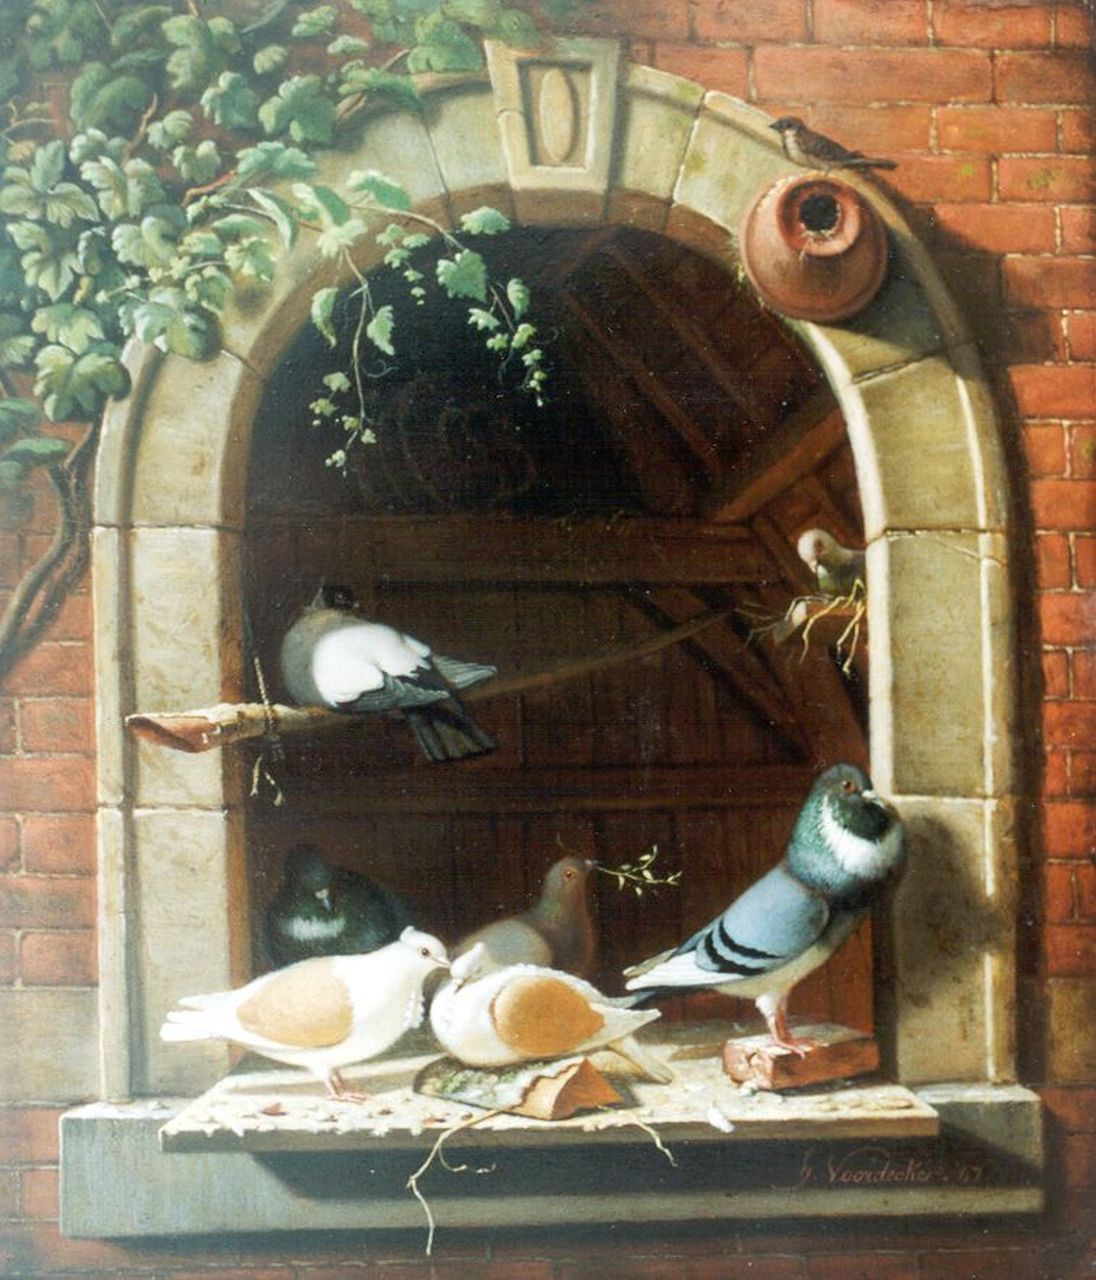 Henri Voordecker | Pigeons on a windowstill, Öl auf Holz, 29,3 x 24,8 cm, signed l.r. und dated '47